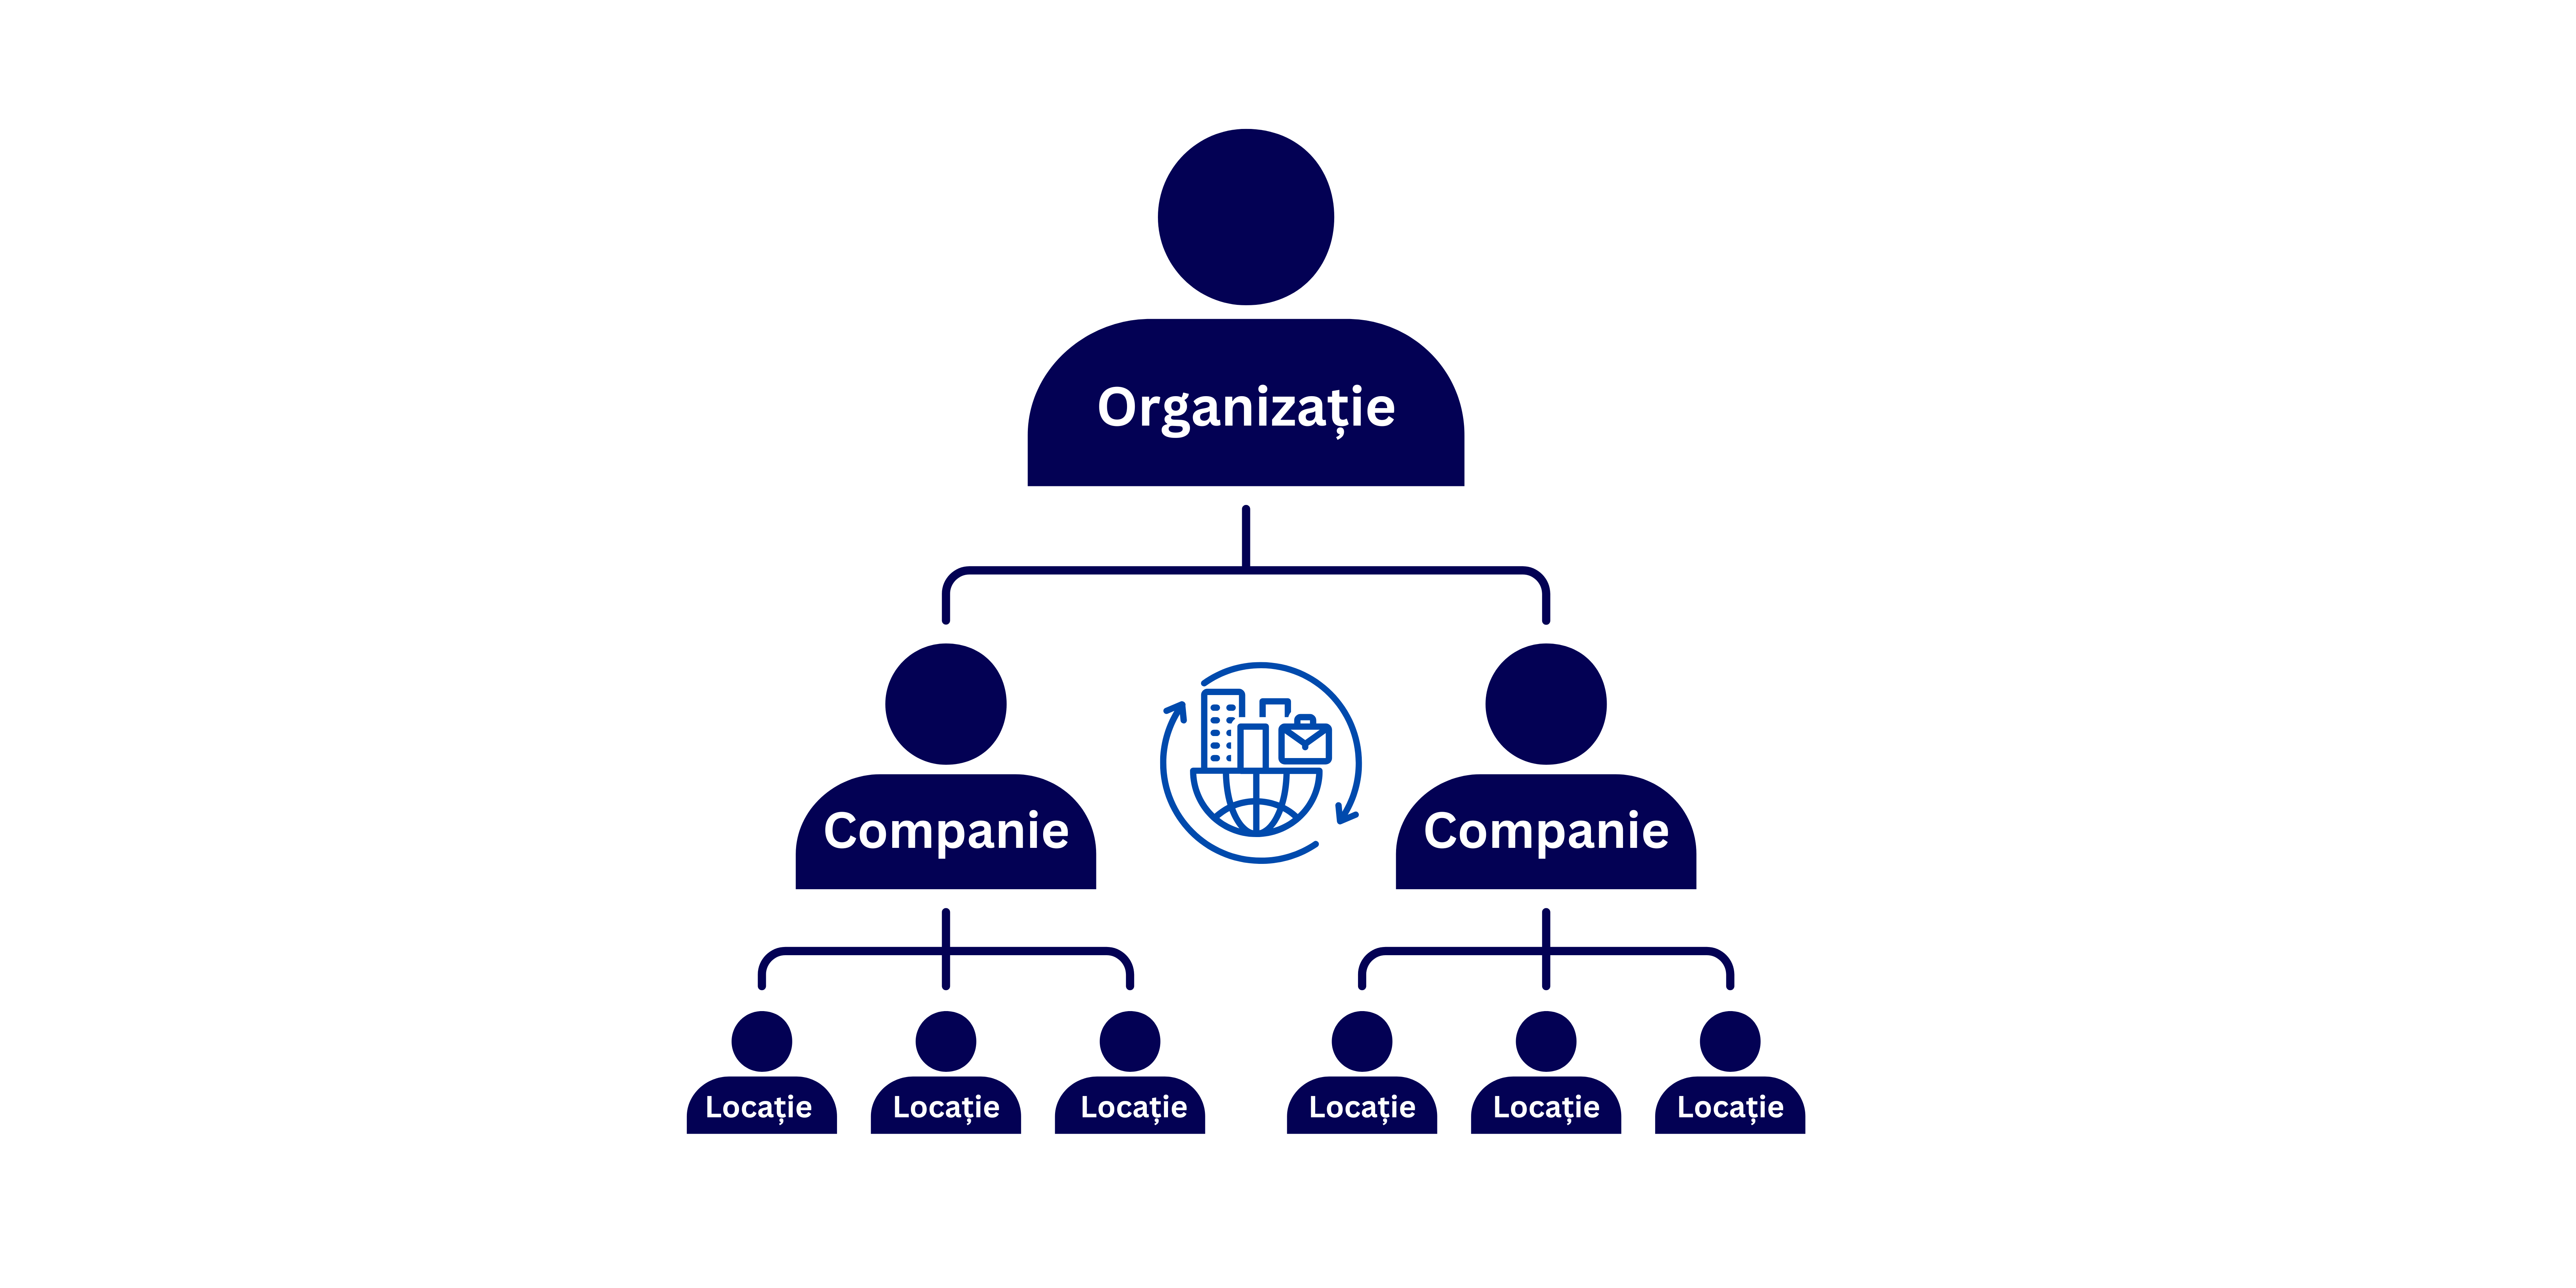 Multi-level company Organizatie